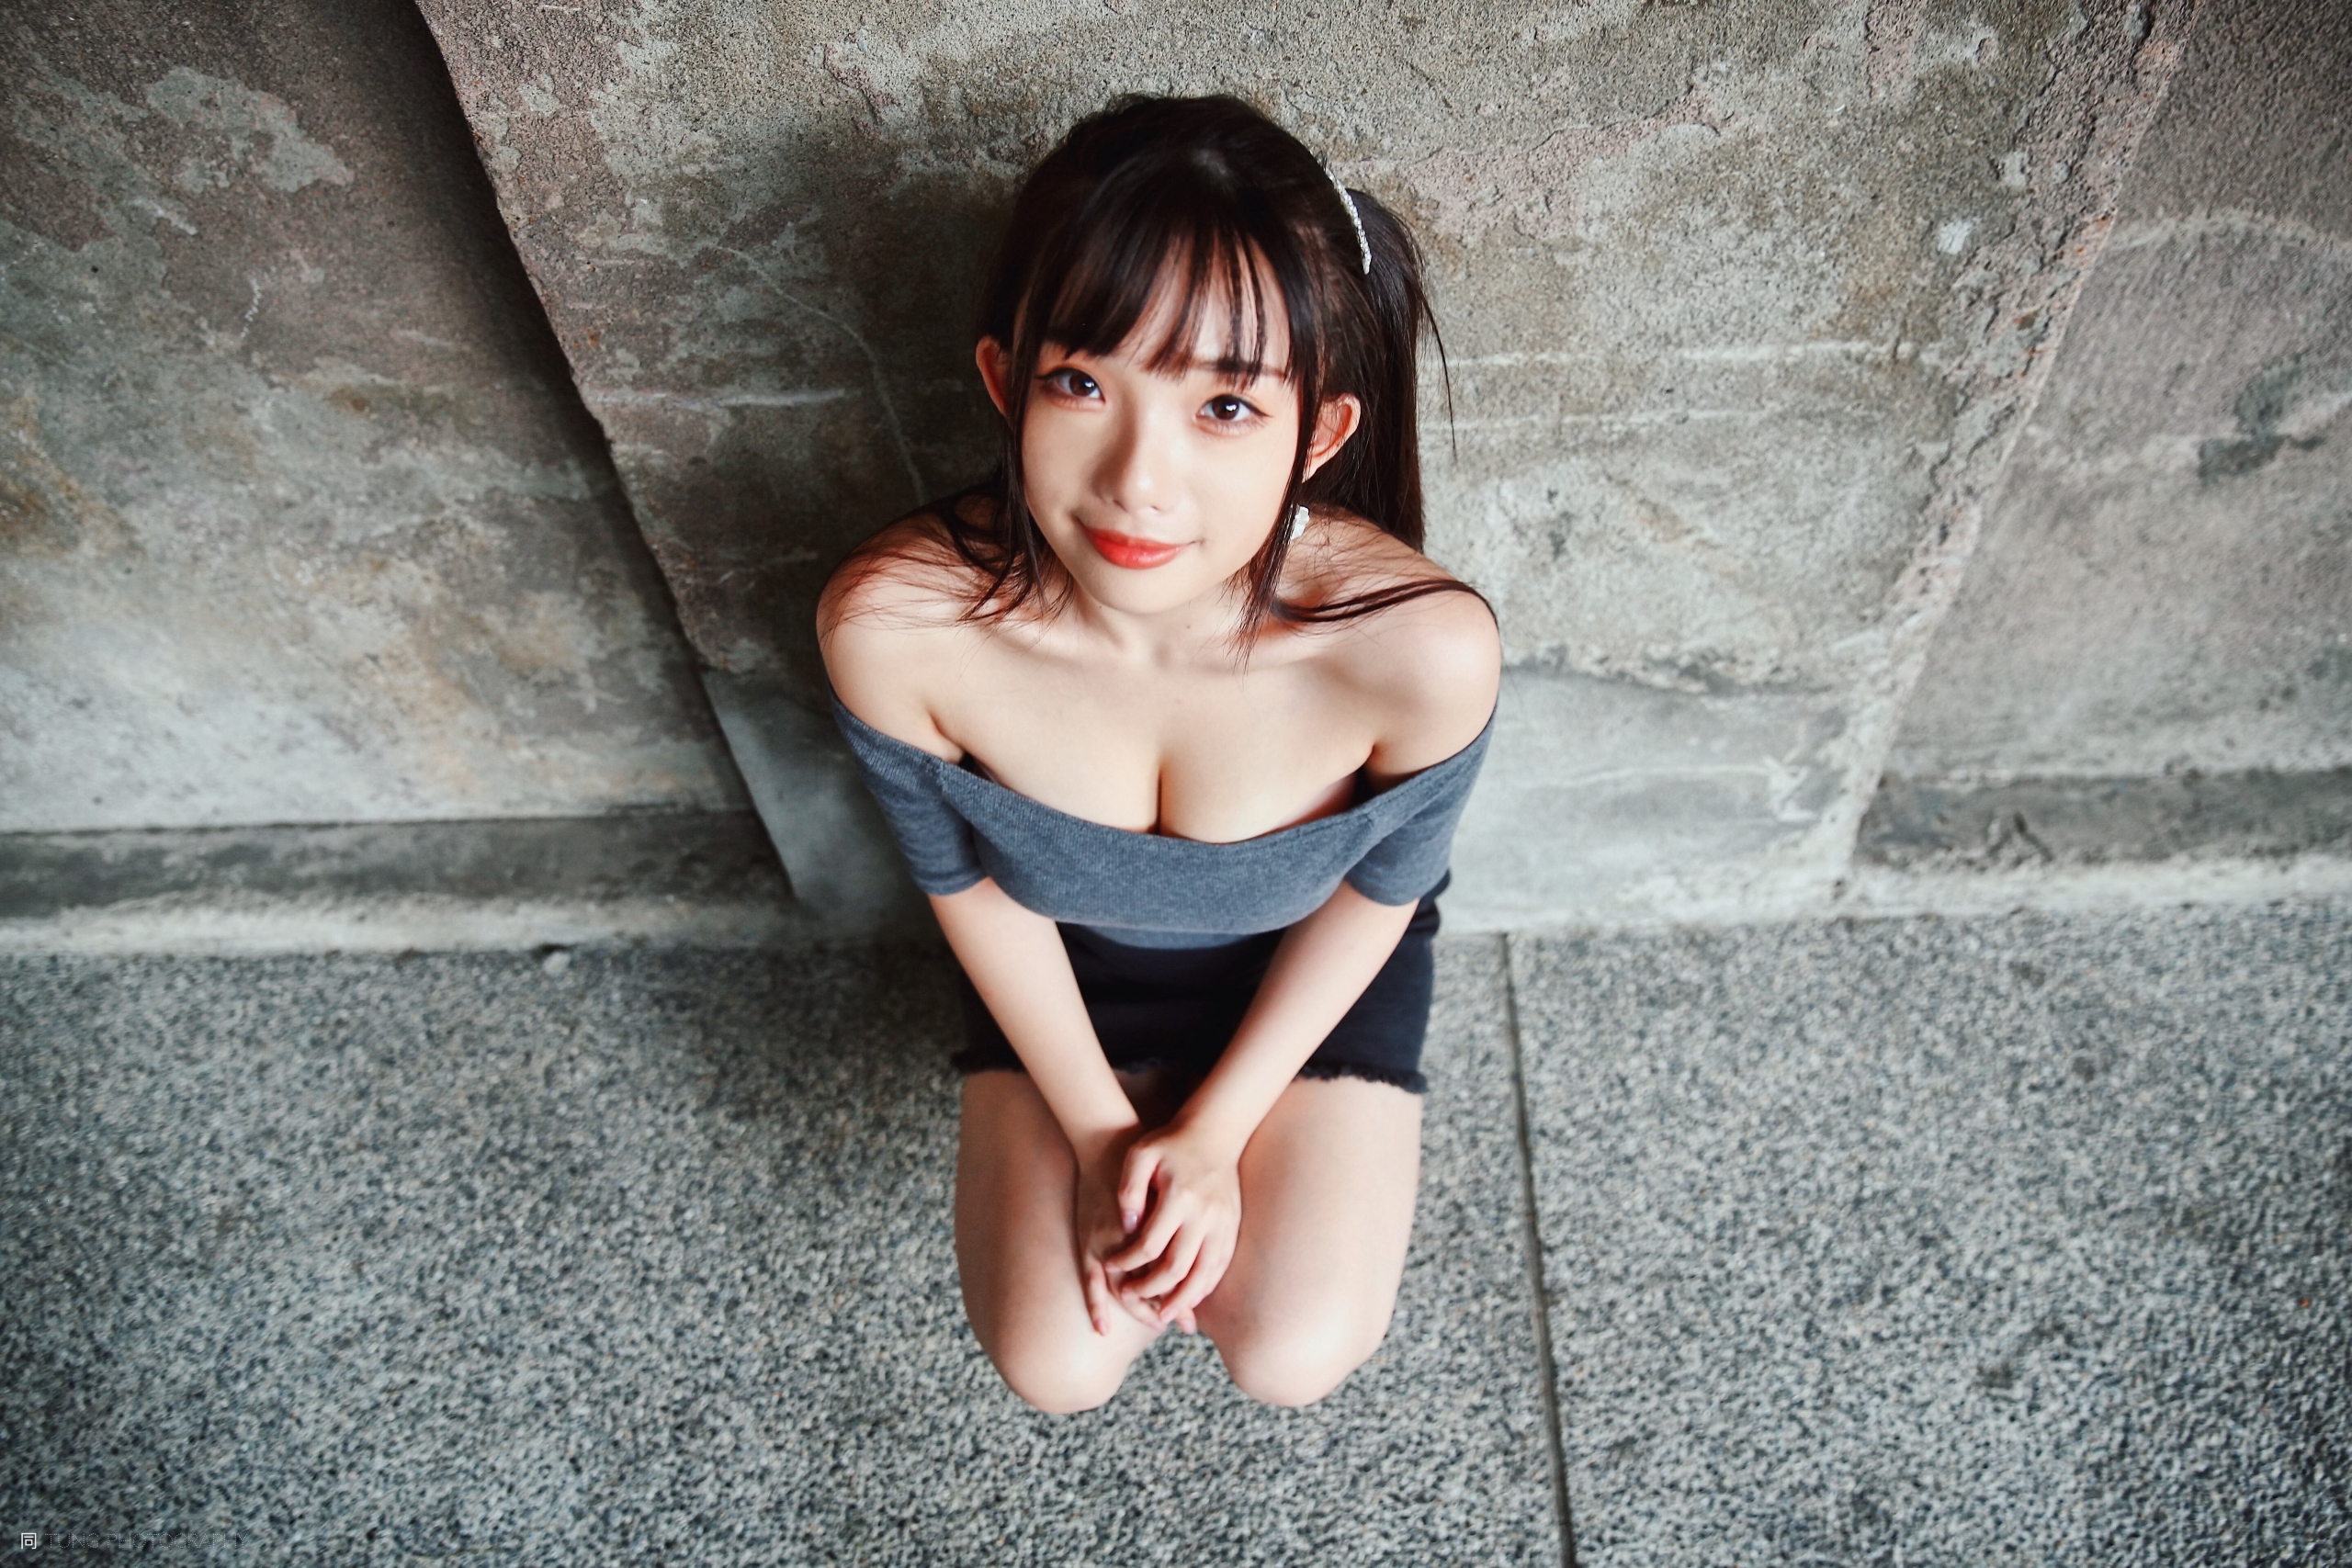 Women Model Asian Brunette Bare Shoulders Crop Top Looking At Viewer Portrait Outdoors Women Outdoor 2560x1707